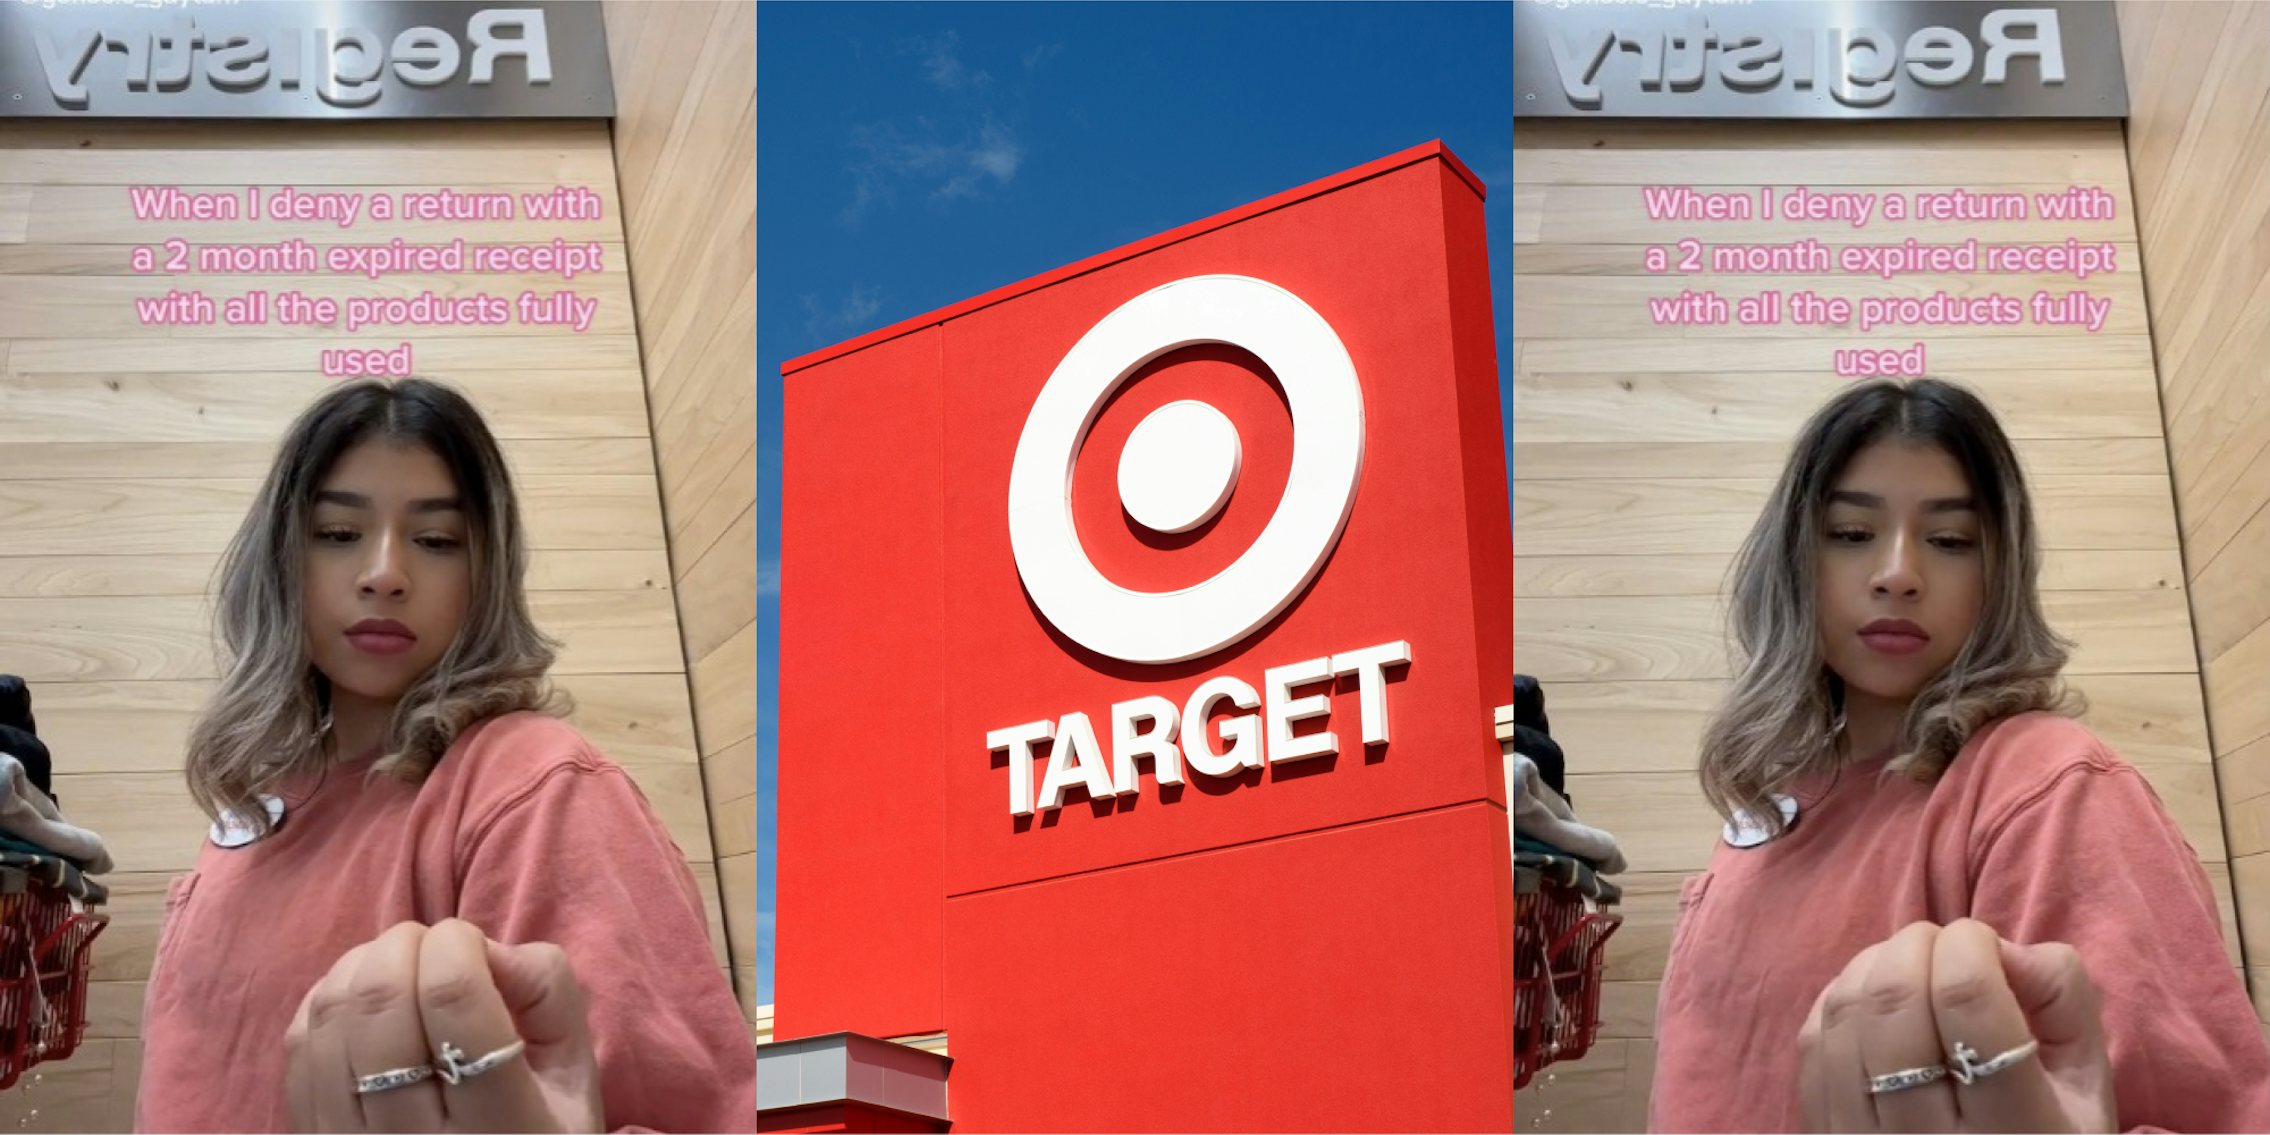 target employee shares why she denies long returns tiktok